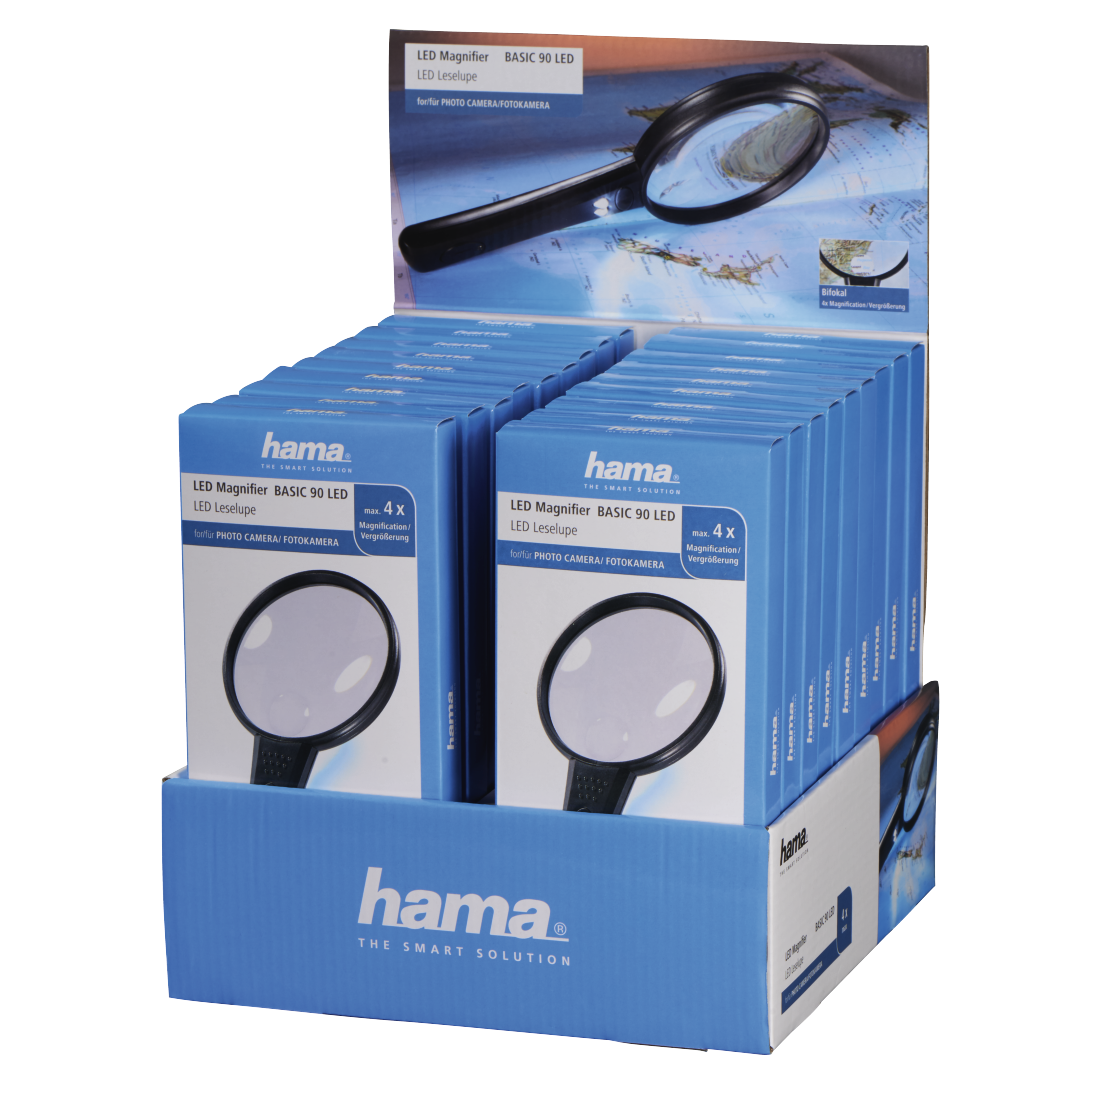 Led-leesloep "Basic 90 LED", 18 stuks in display | Hama